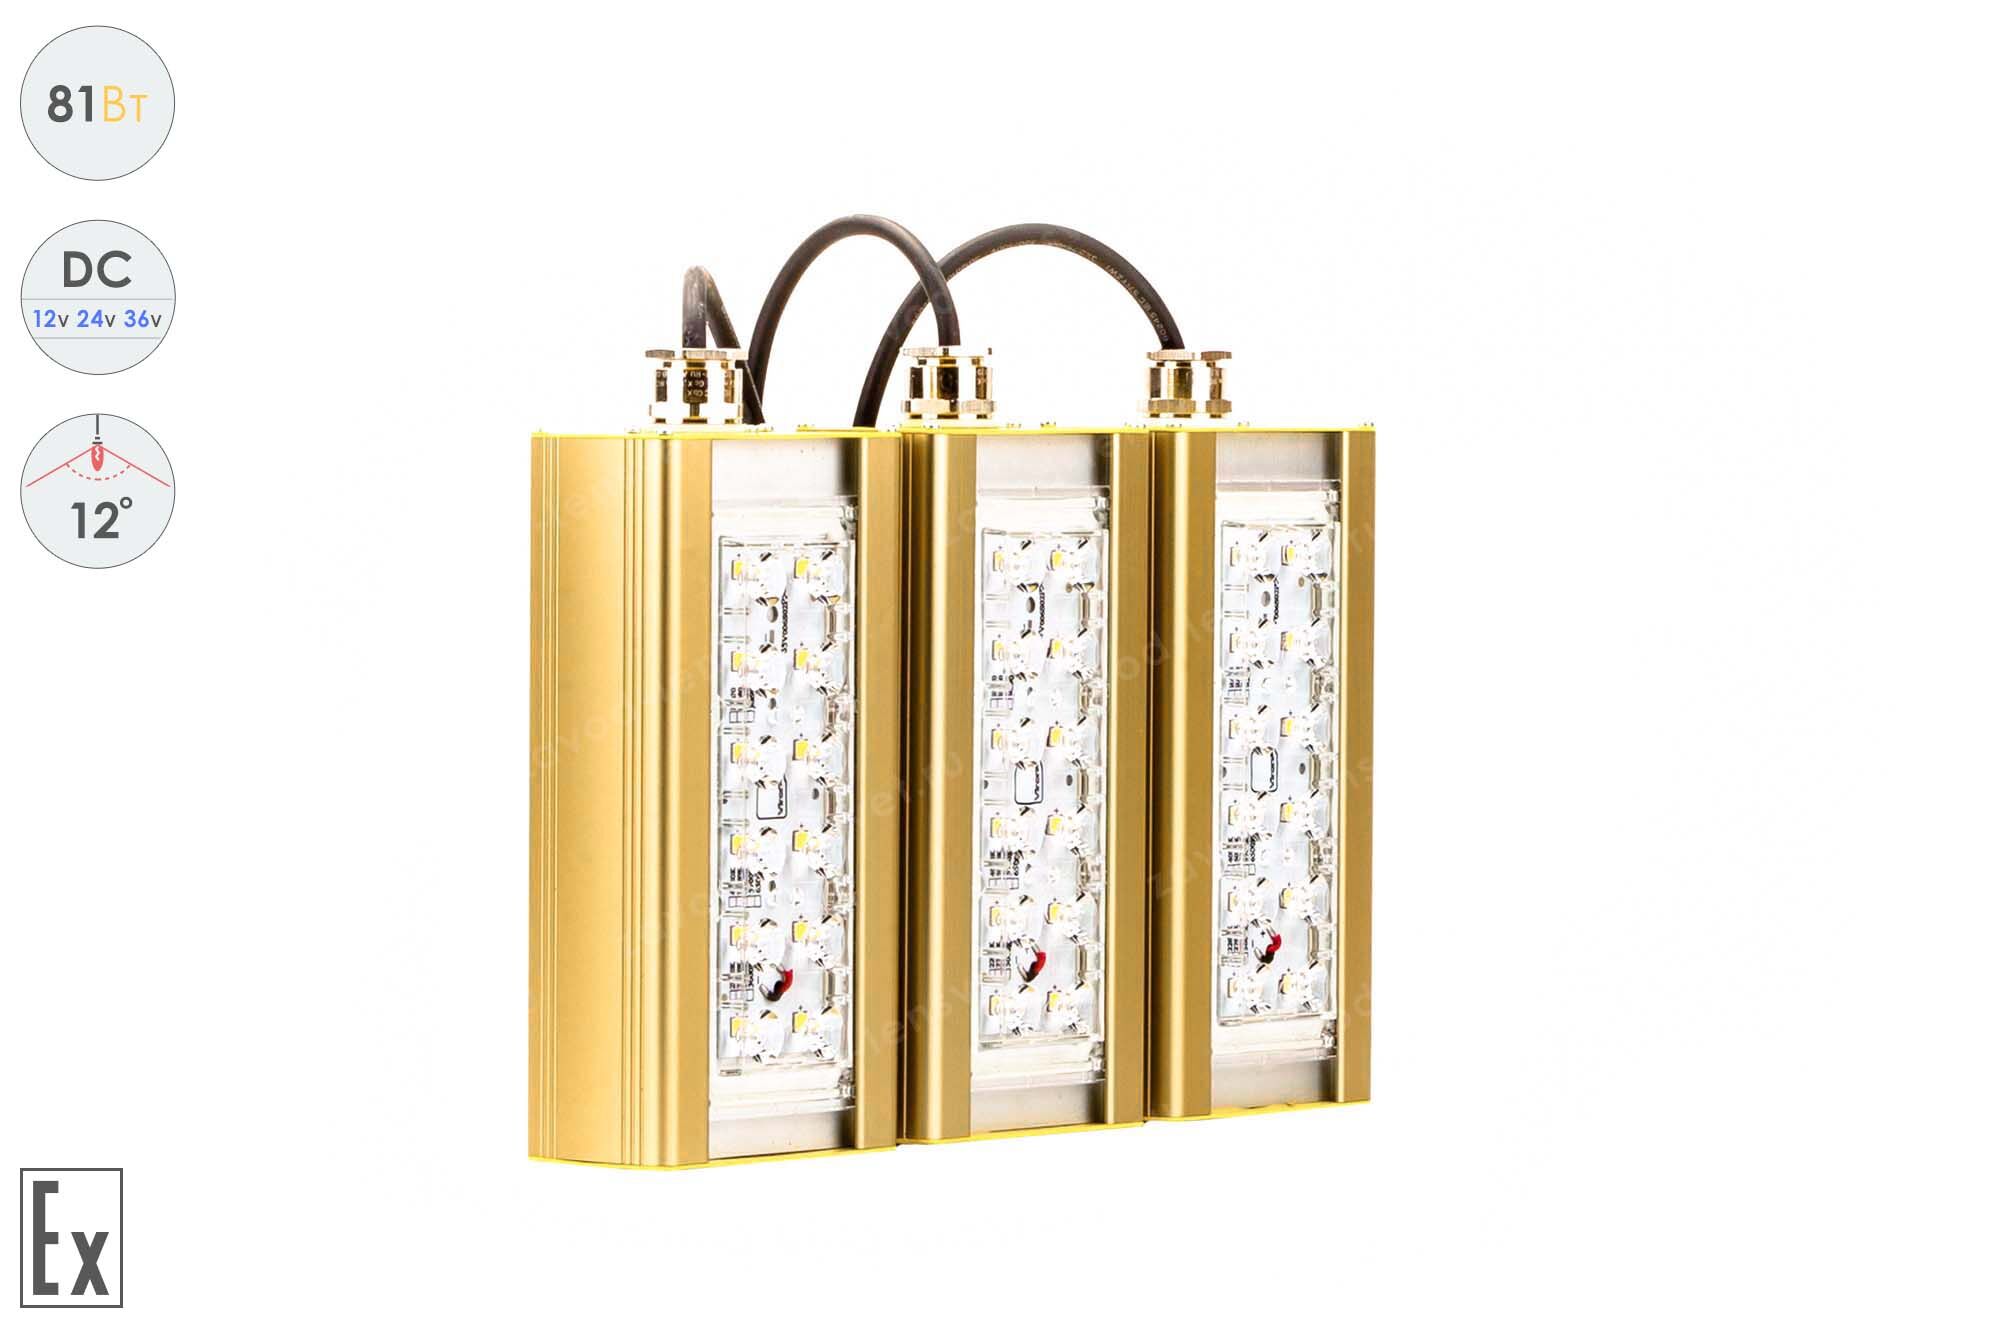 Низковольтный светодиодный светильник Прожектор Взрывозащищенный GOLD, консоль K-3 , 81 Вт, 12° 1